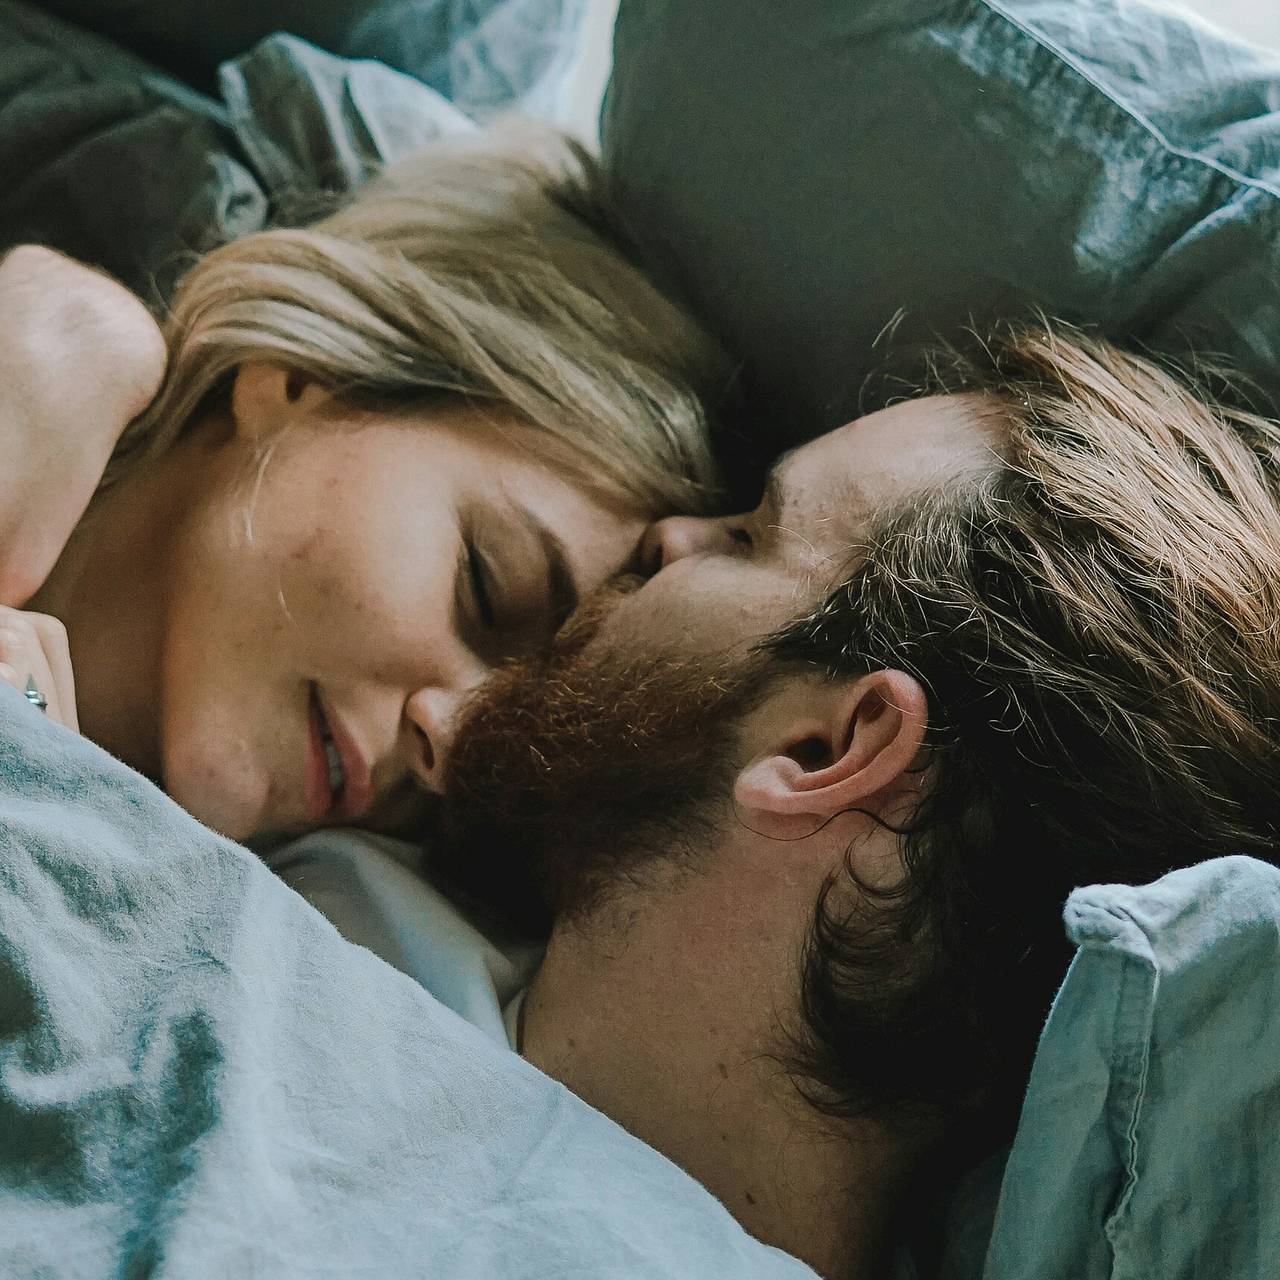 Секс после развода: 4 важных вопроса к себе о новых отношениях